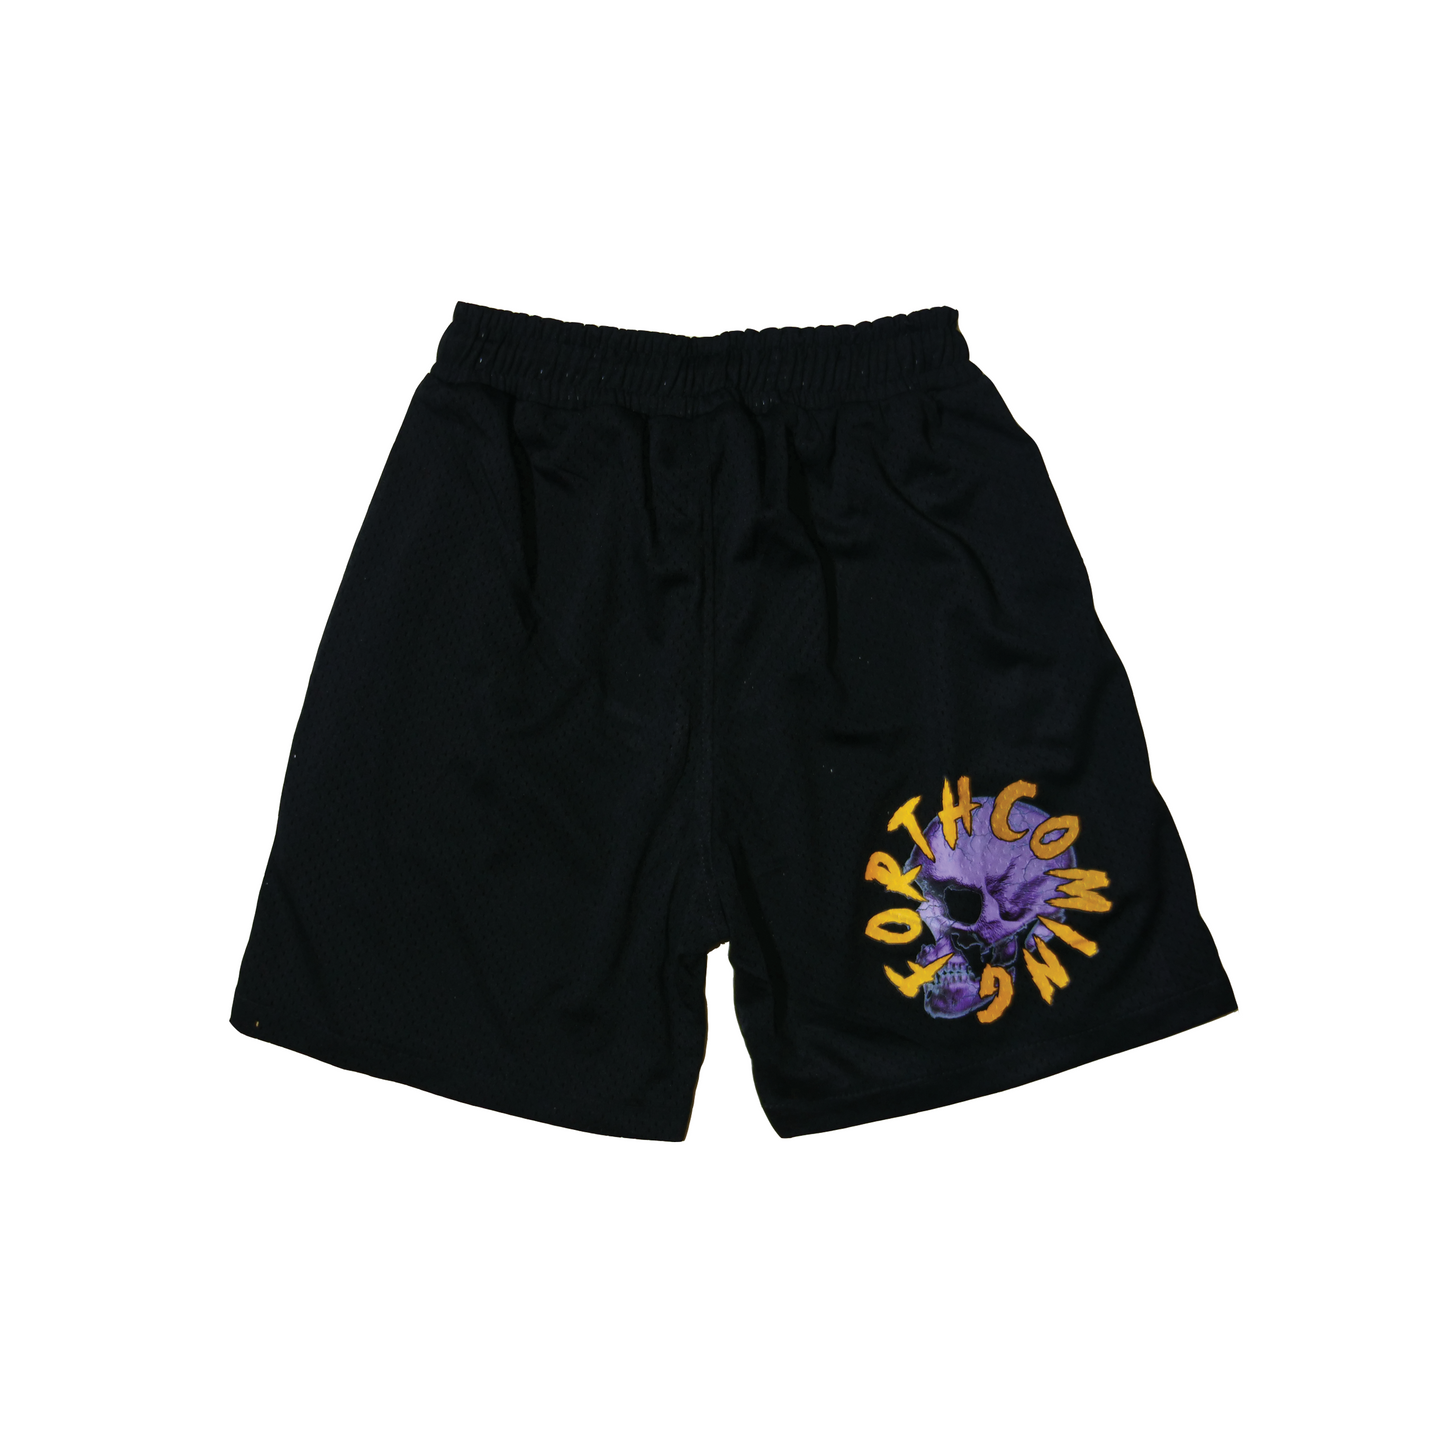 Forthcoming “SKULL” shorts